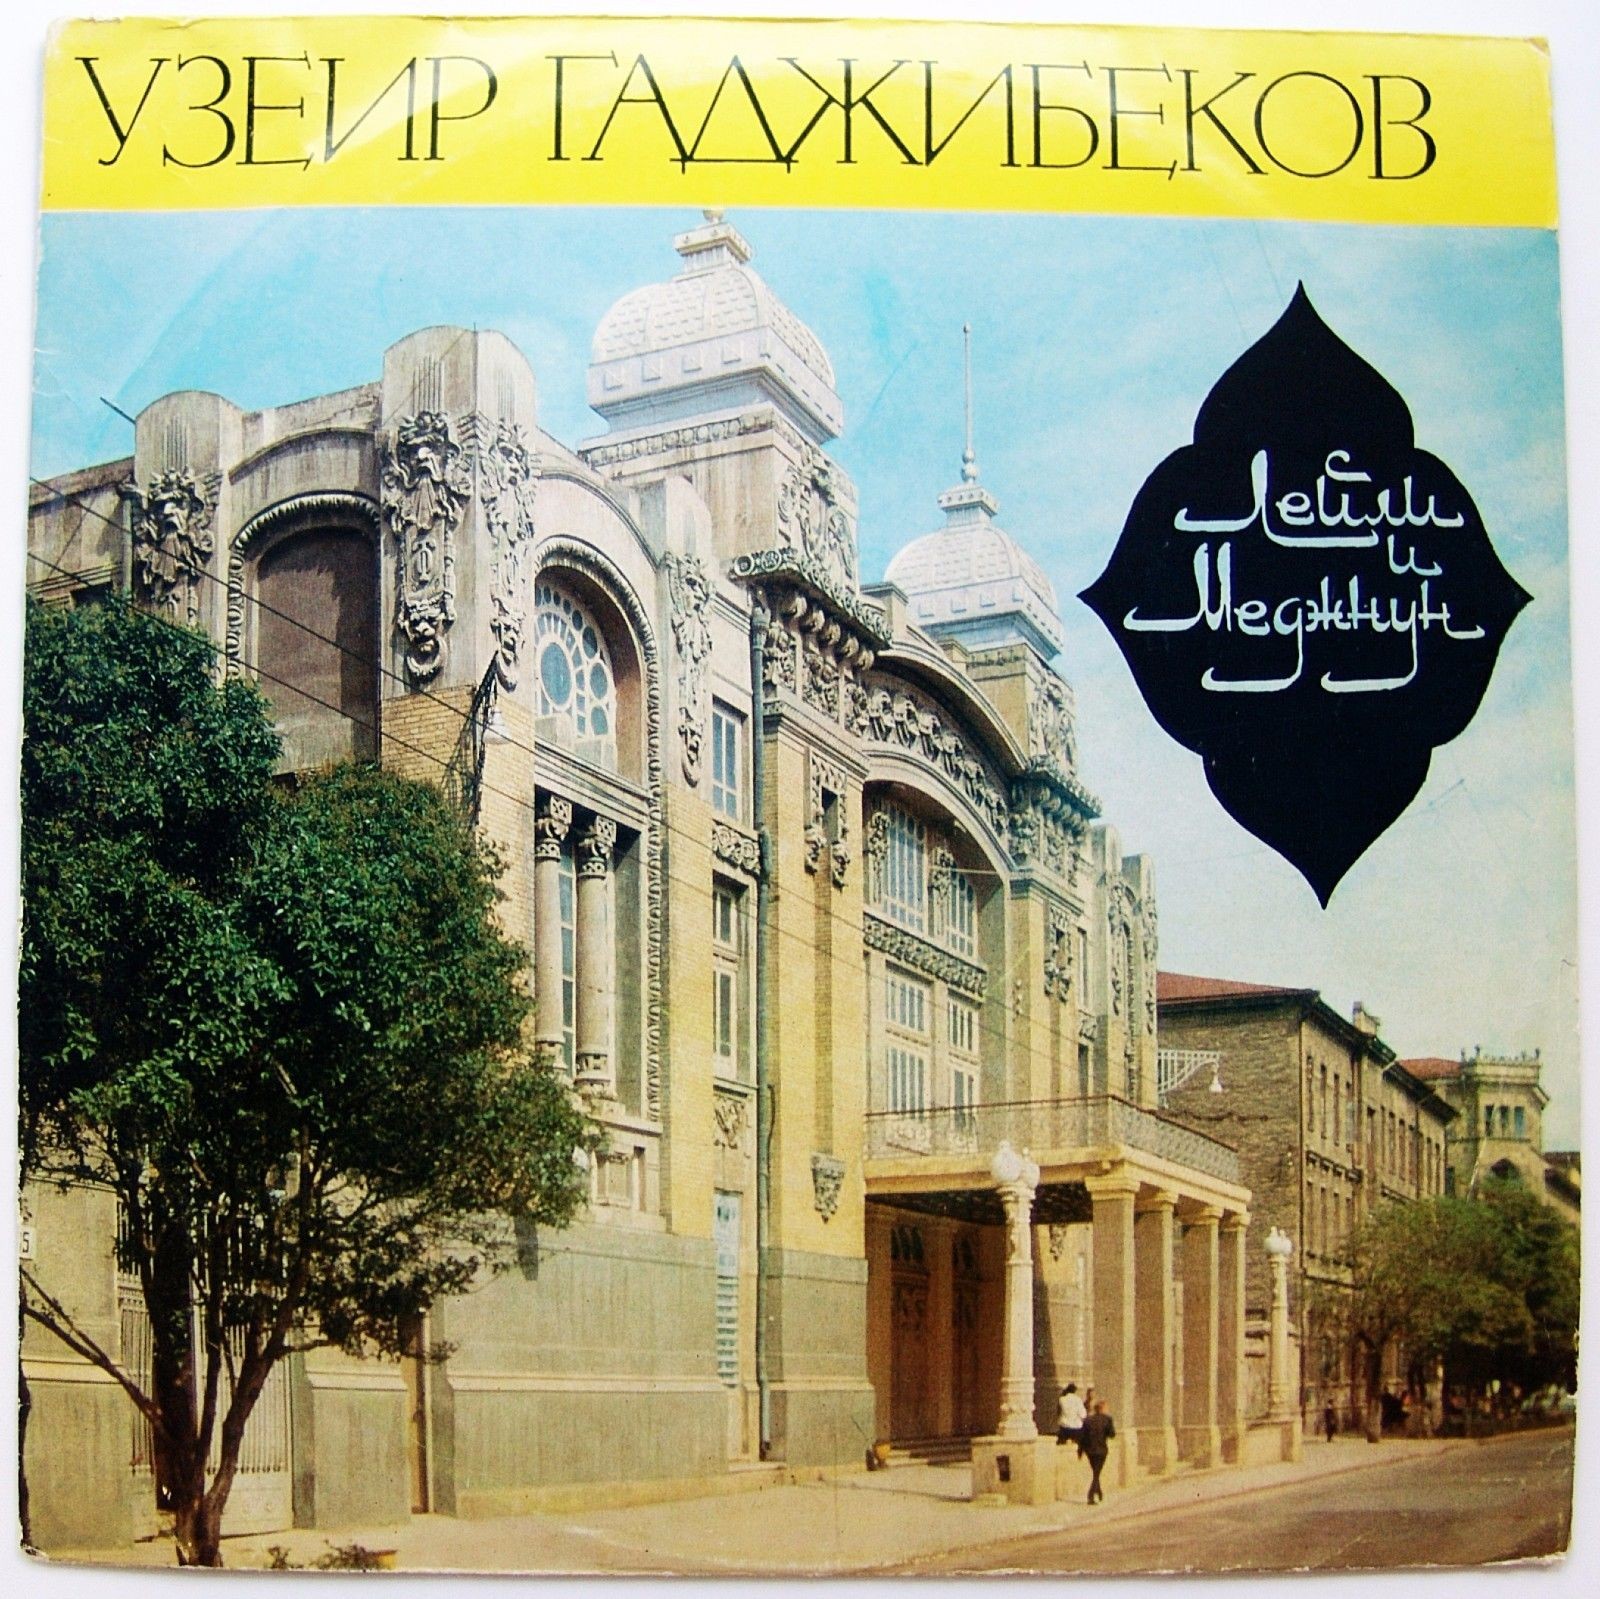 У. ГАДЖИБЕКОВ (1885-1948) "Лейли и Меджнун": фрагменты из оперы (на азербайджанском языке)